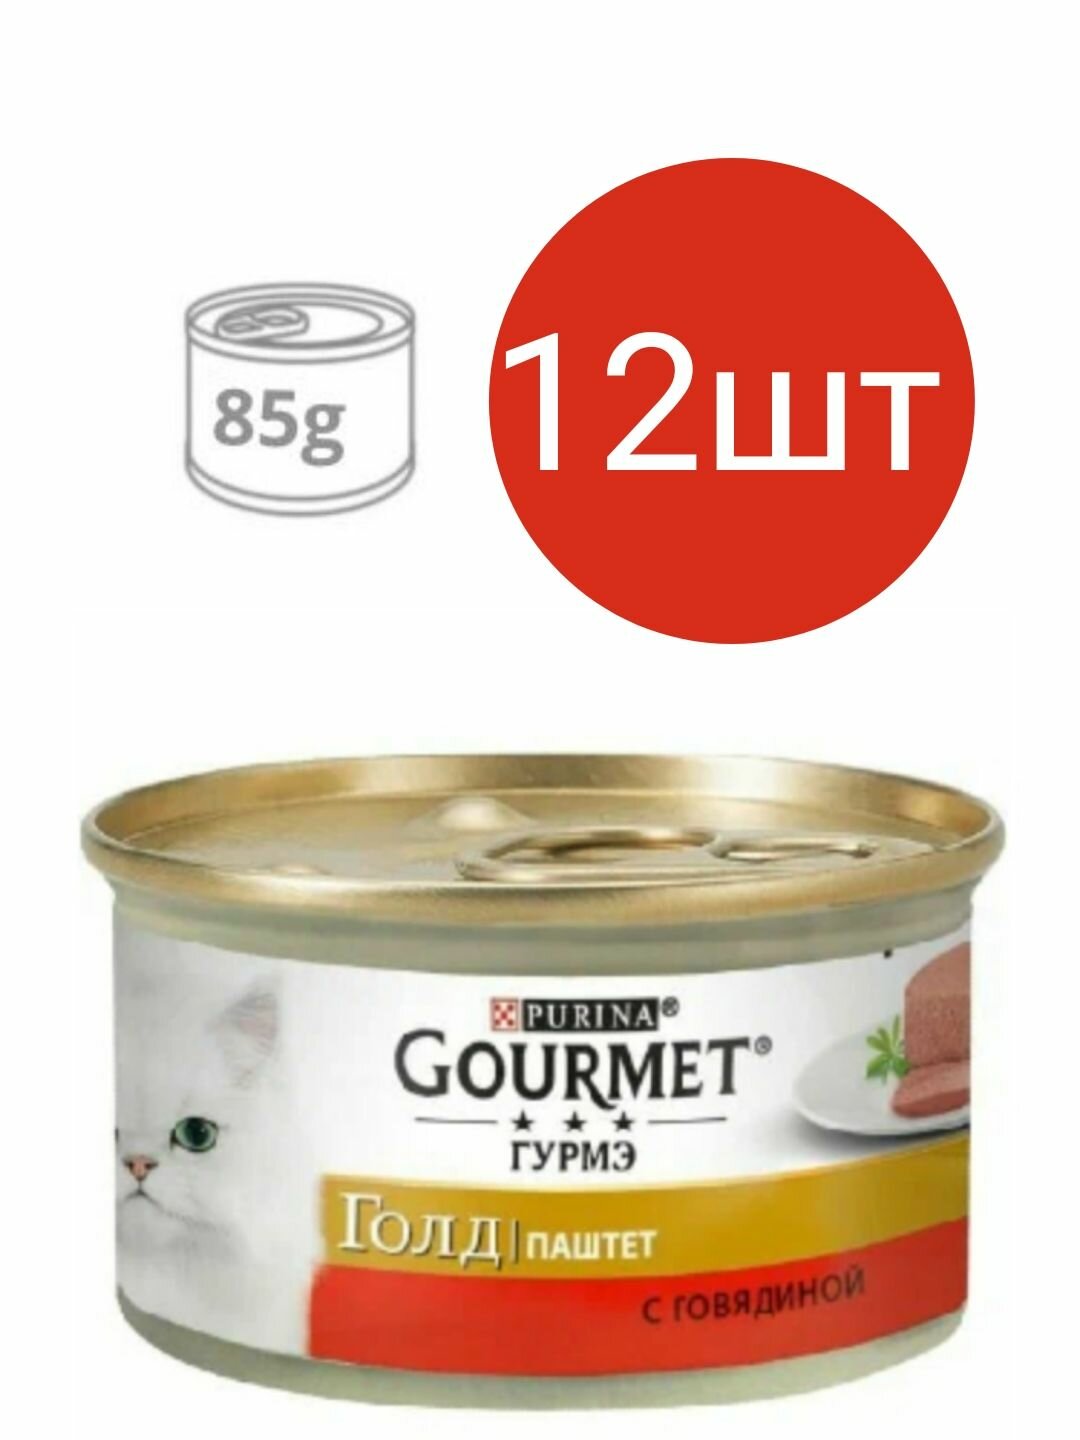 Gourmet Gold для кошек , паштет с говядиной (12шт по 85г)